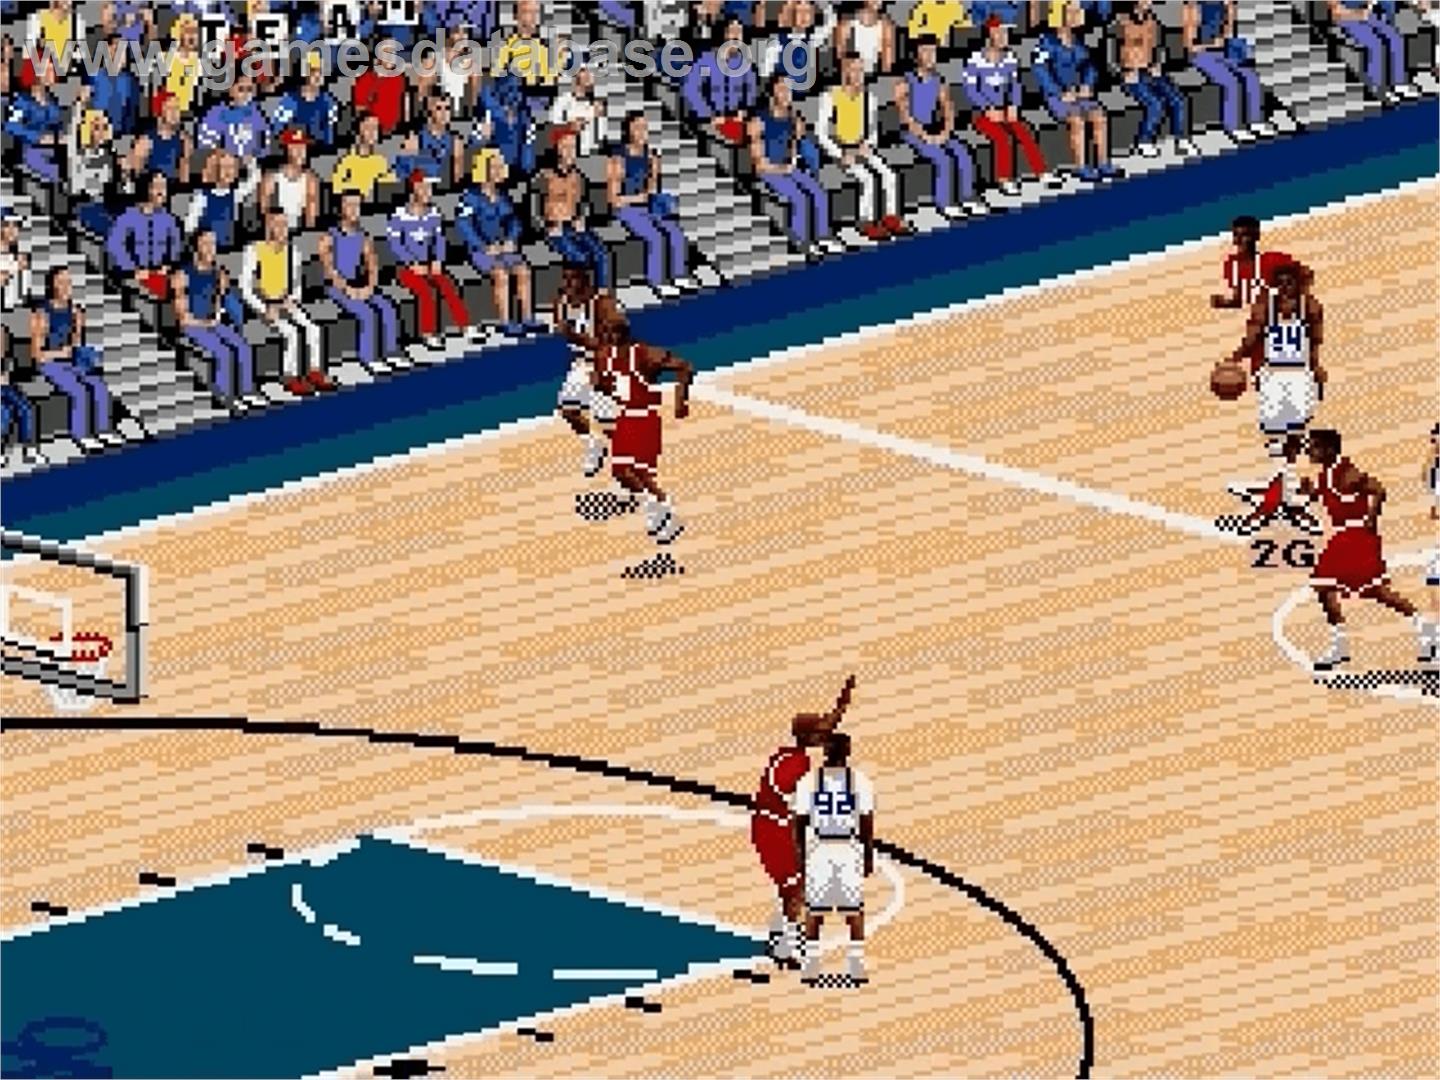 Coach K College Basketball - Sega Genesis - Artwork - In Game